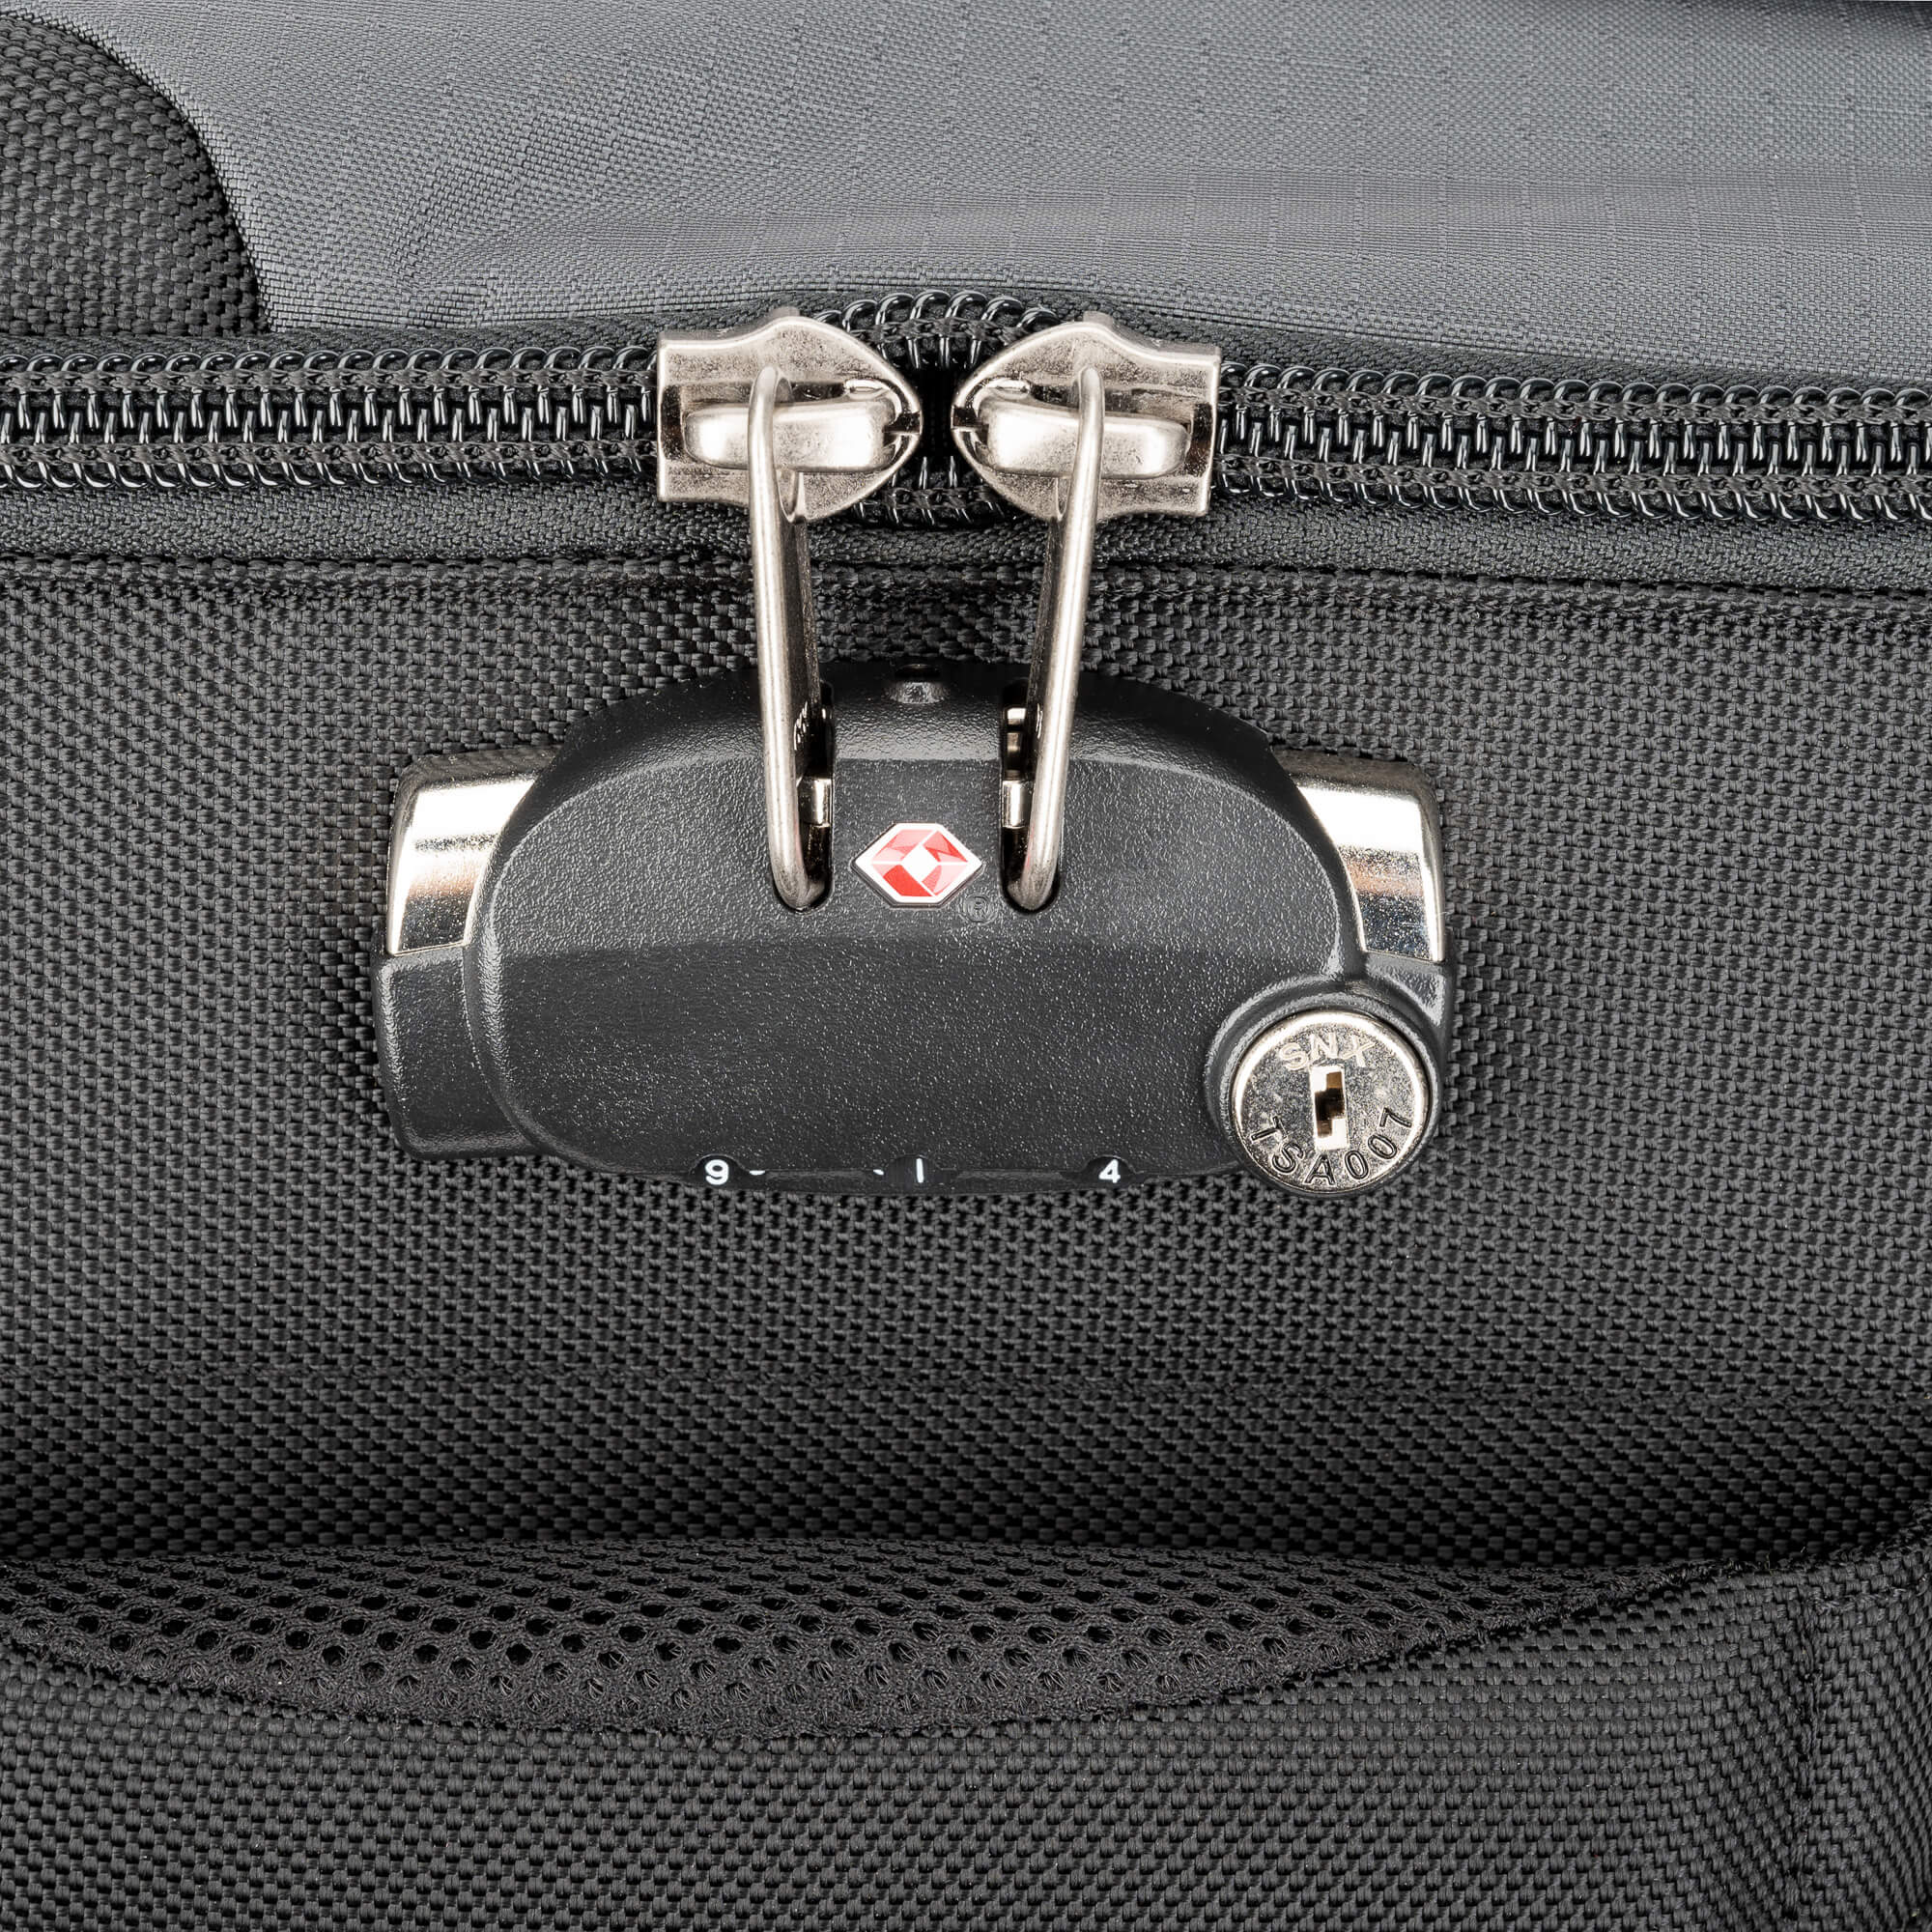 Venturing Observer Travel Roller & Backpack Bundle